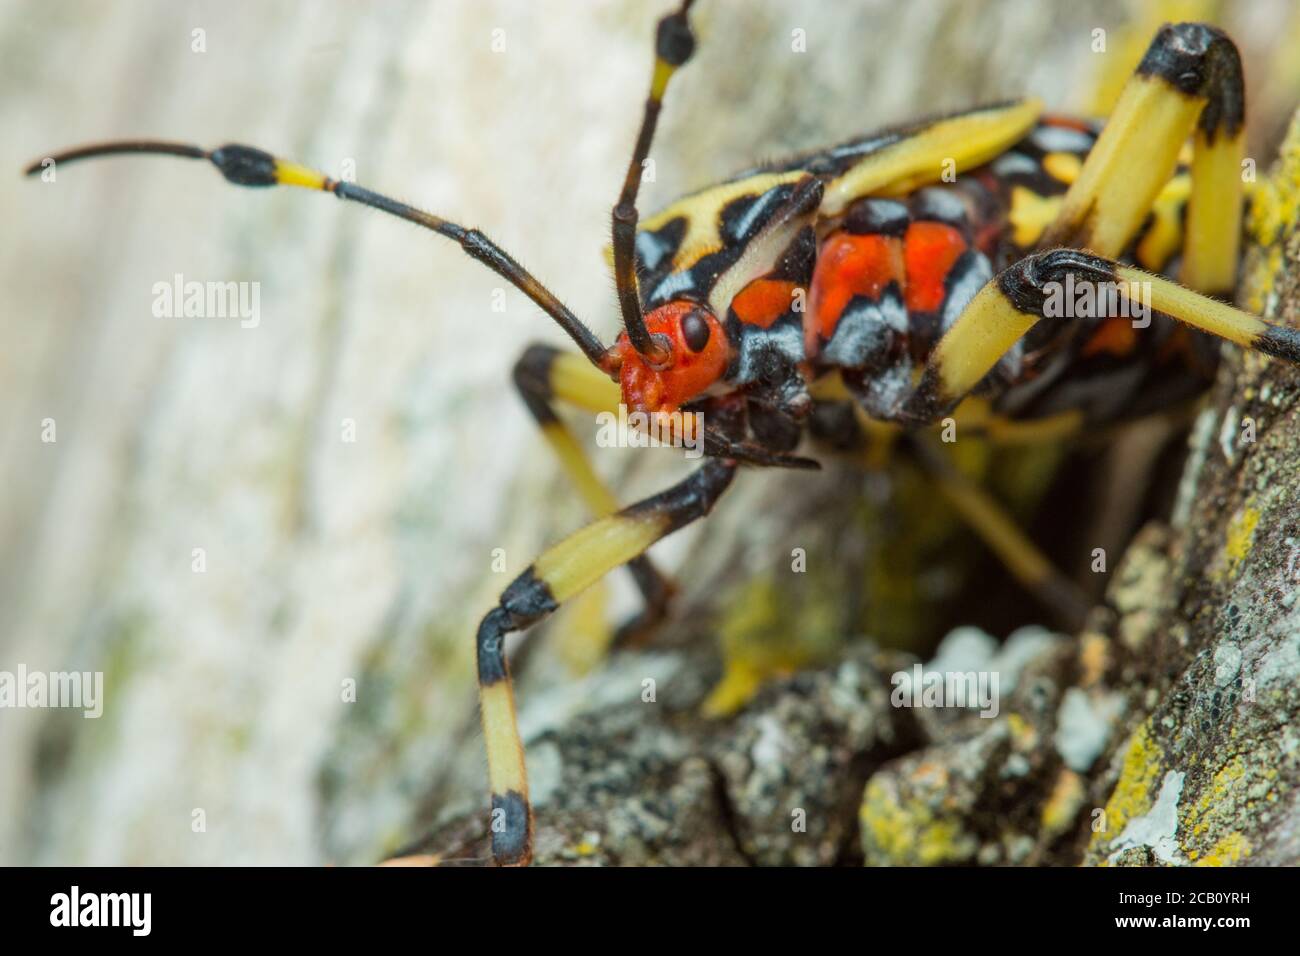 Mesquite géant immature Bug du genre Thasus (Hemiptera, Coreidae). Tolima, Colombie. Banque D'Images